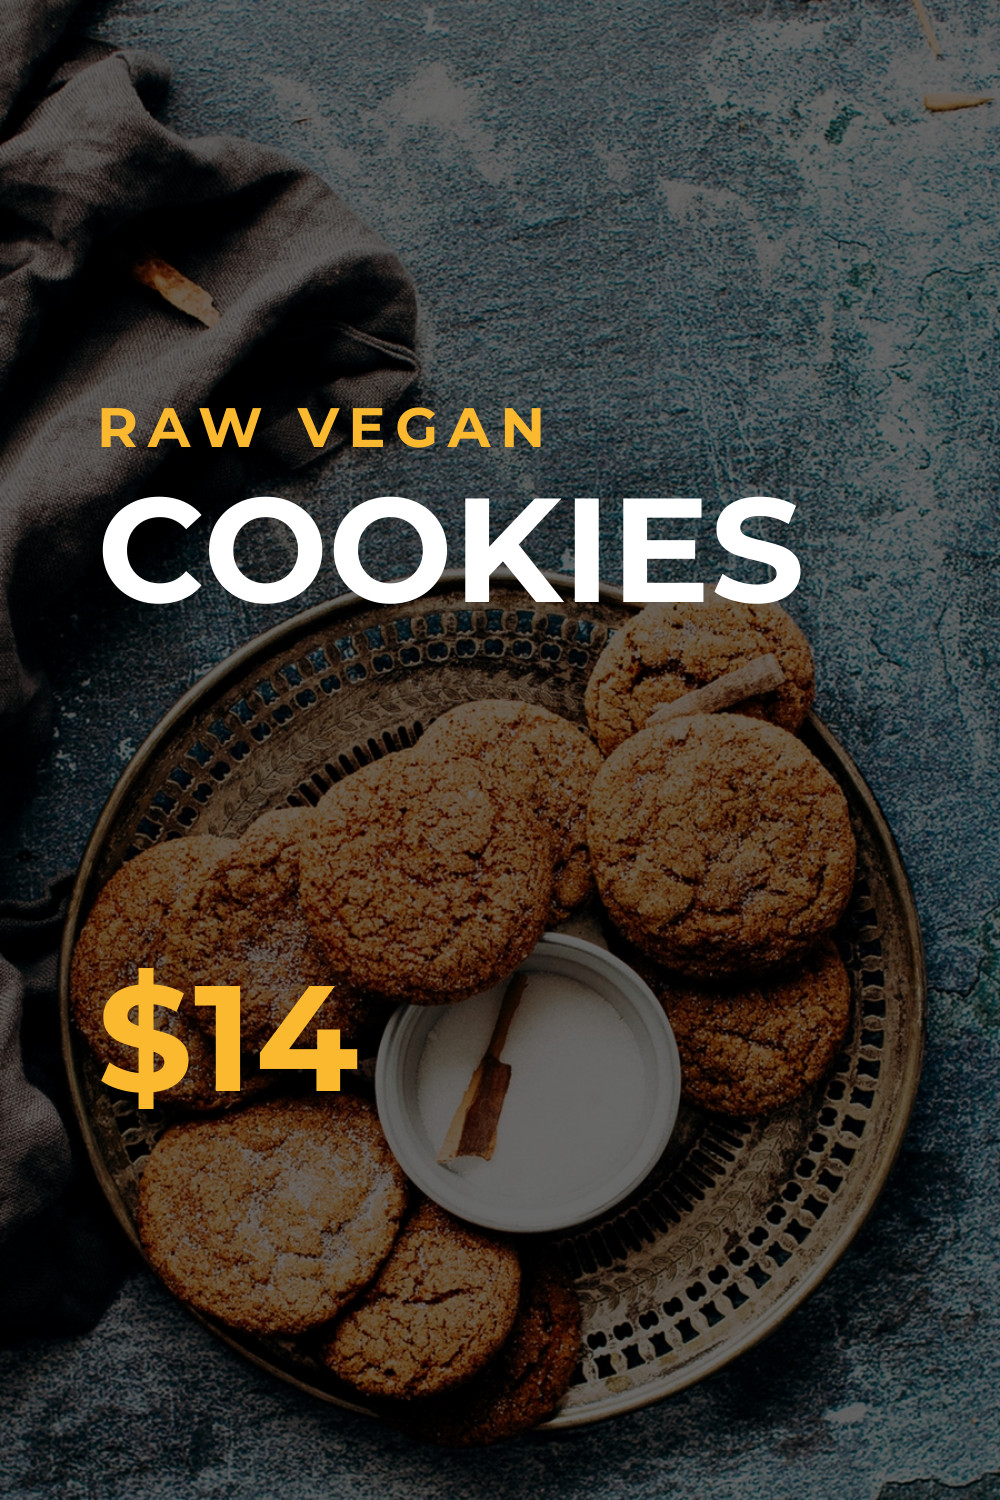 Raw Vegan Cookies Inline Rectangle 300x250